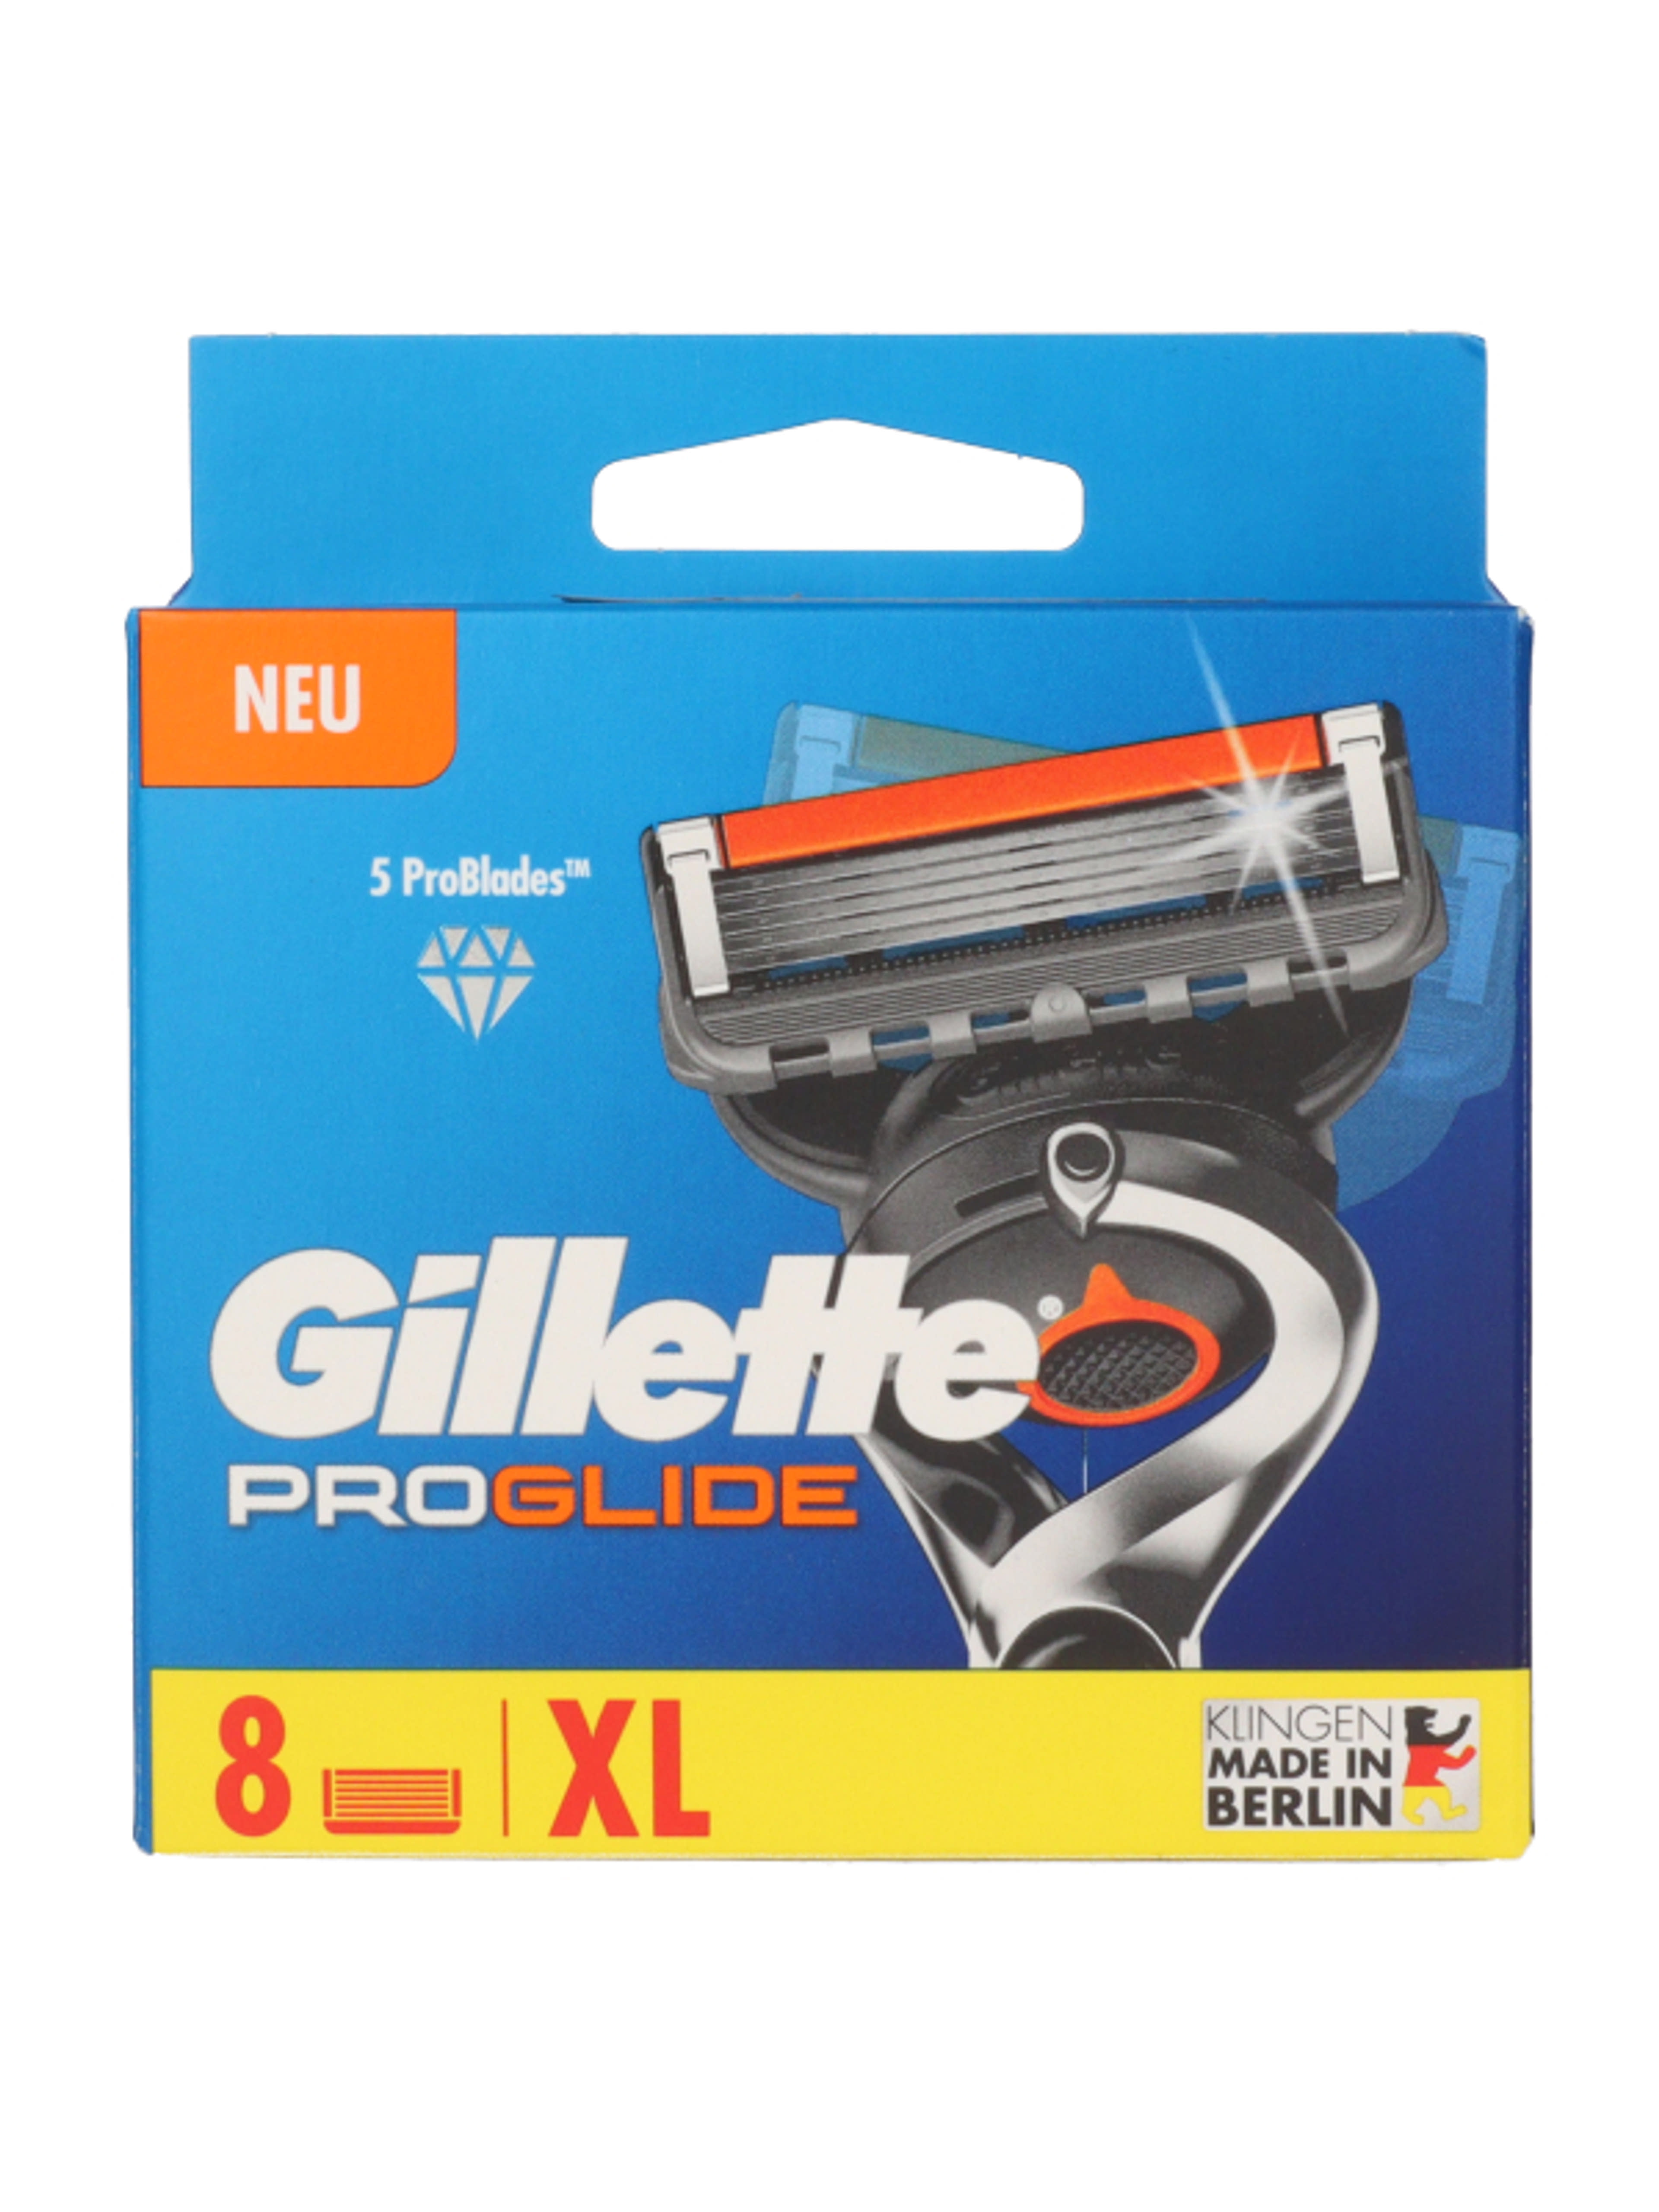 Gillette Fusion ProGlide borotvabetét 5 pengés - 8 db